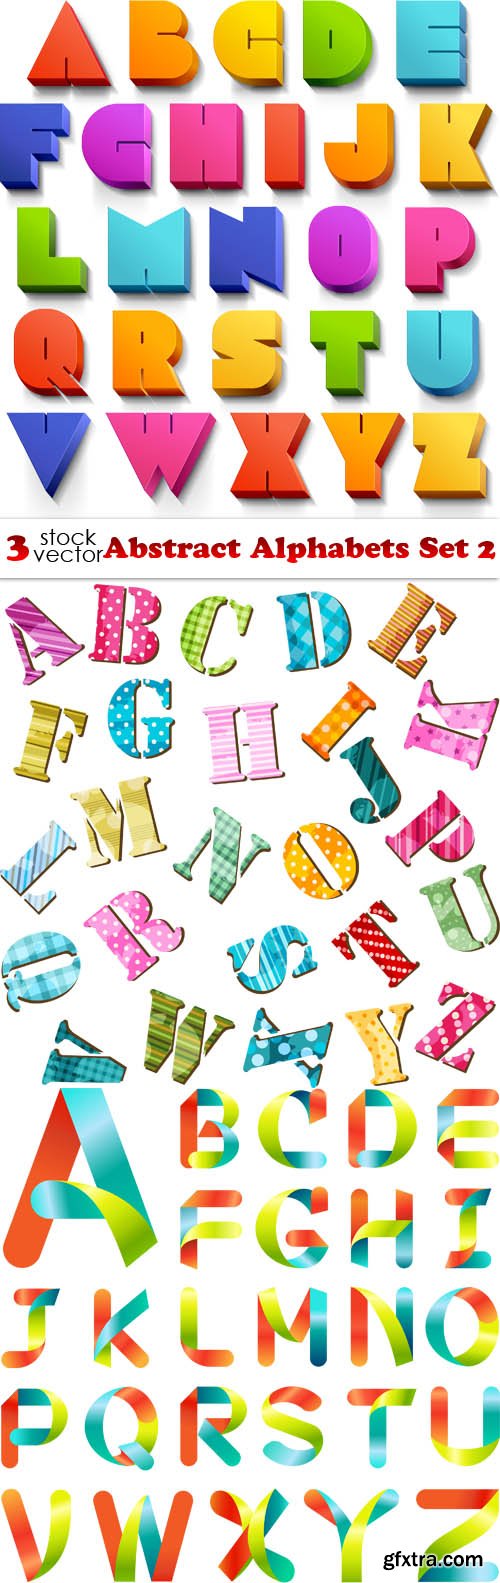 Vectors - Abstract Alphabets Set 2